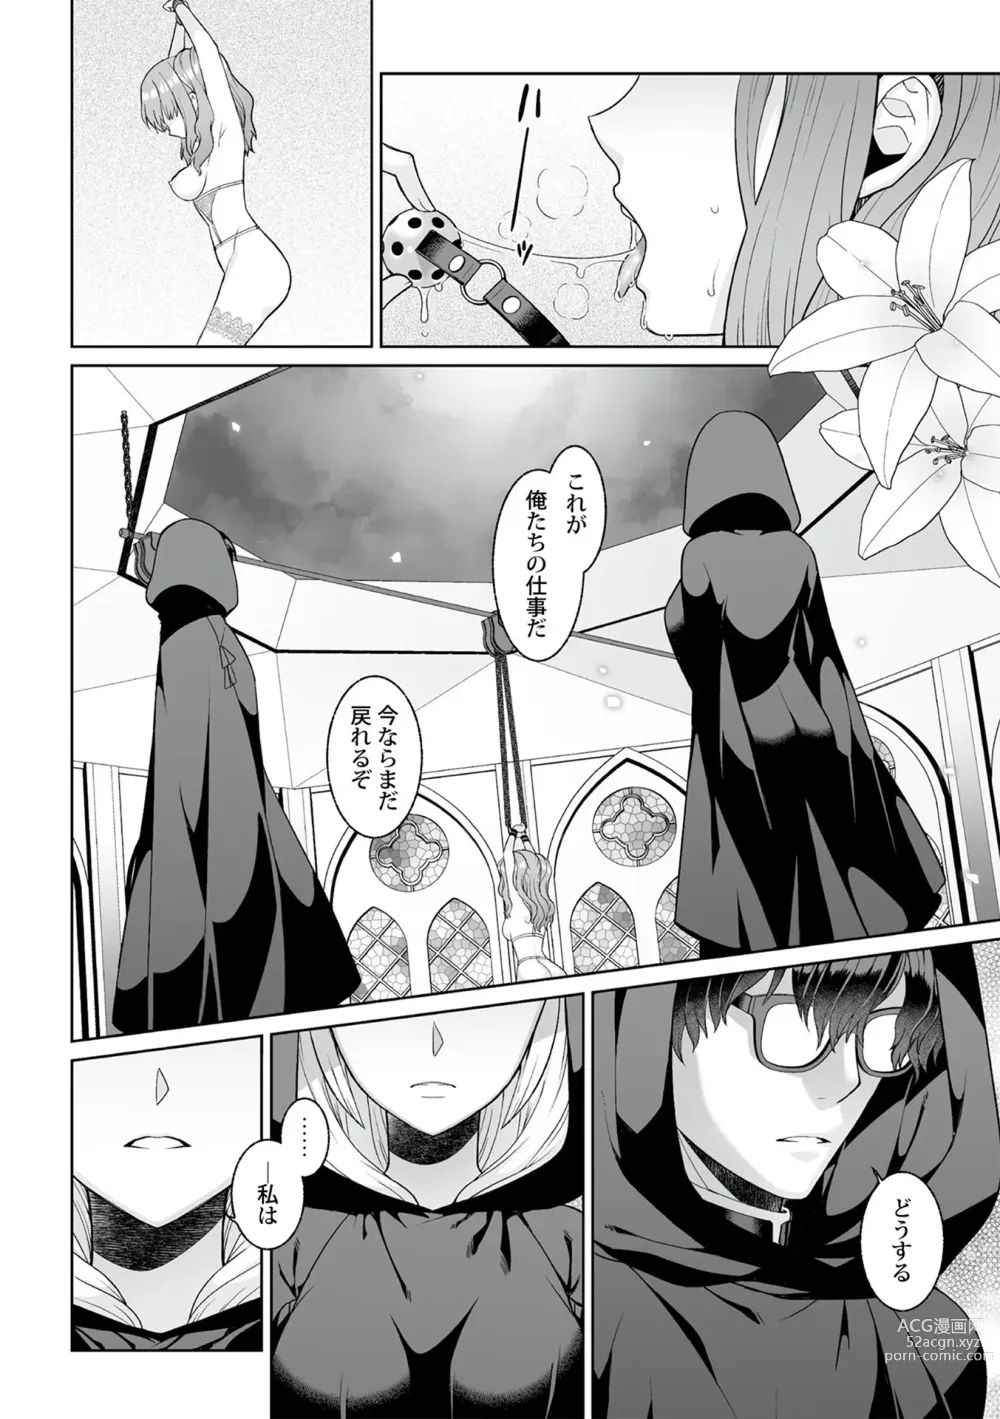 Page 8 of manga Tsukitei no Seijo Inmitsu no Utage 1